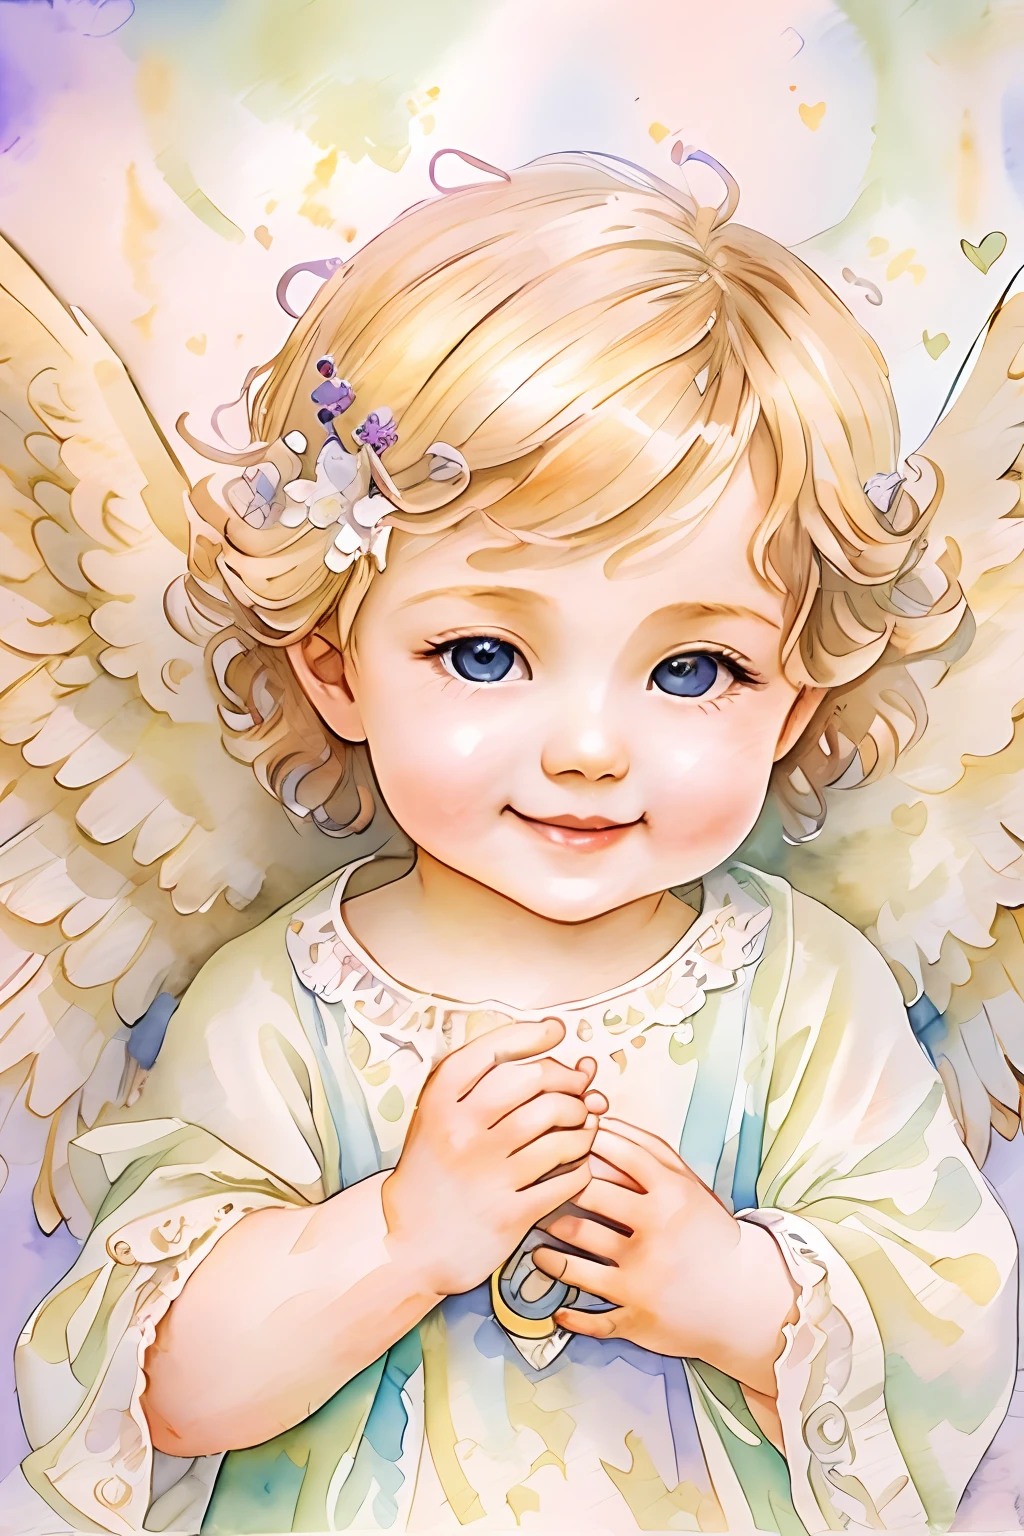 Bendiciones de los ángeles､fondo brillante、marca del corazon、sensibilidad､Una sonrisa、amable､Ángel bebé､Art Nouveau、pintura de acuarela